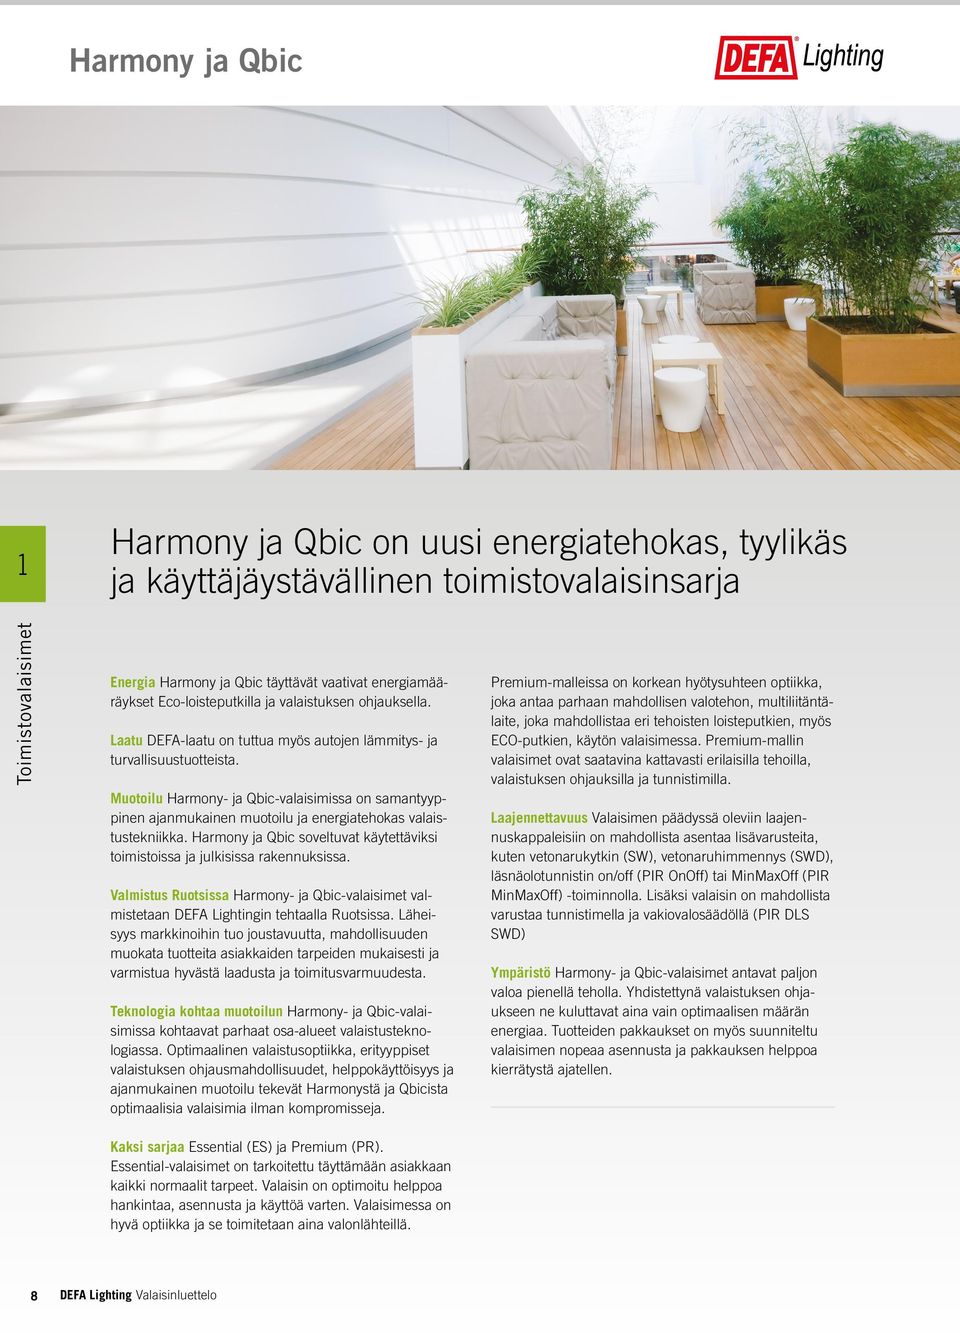 Muotoilu Harmony- ja Qbic-valaisimissa on samantyyppinen ajanmukainen muotoilu ja energiatehokas valaistustekniikka. Harmony ja Qbic soveltuvat käytettäviksi toimistoissa ja julkisissa rakennuksissa.